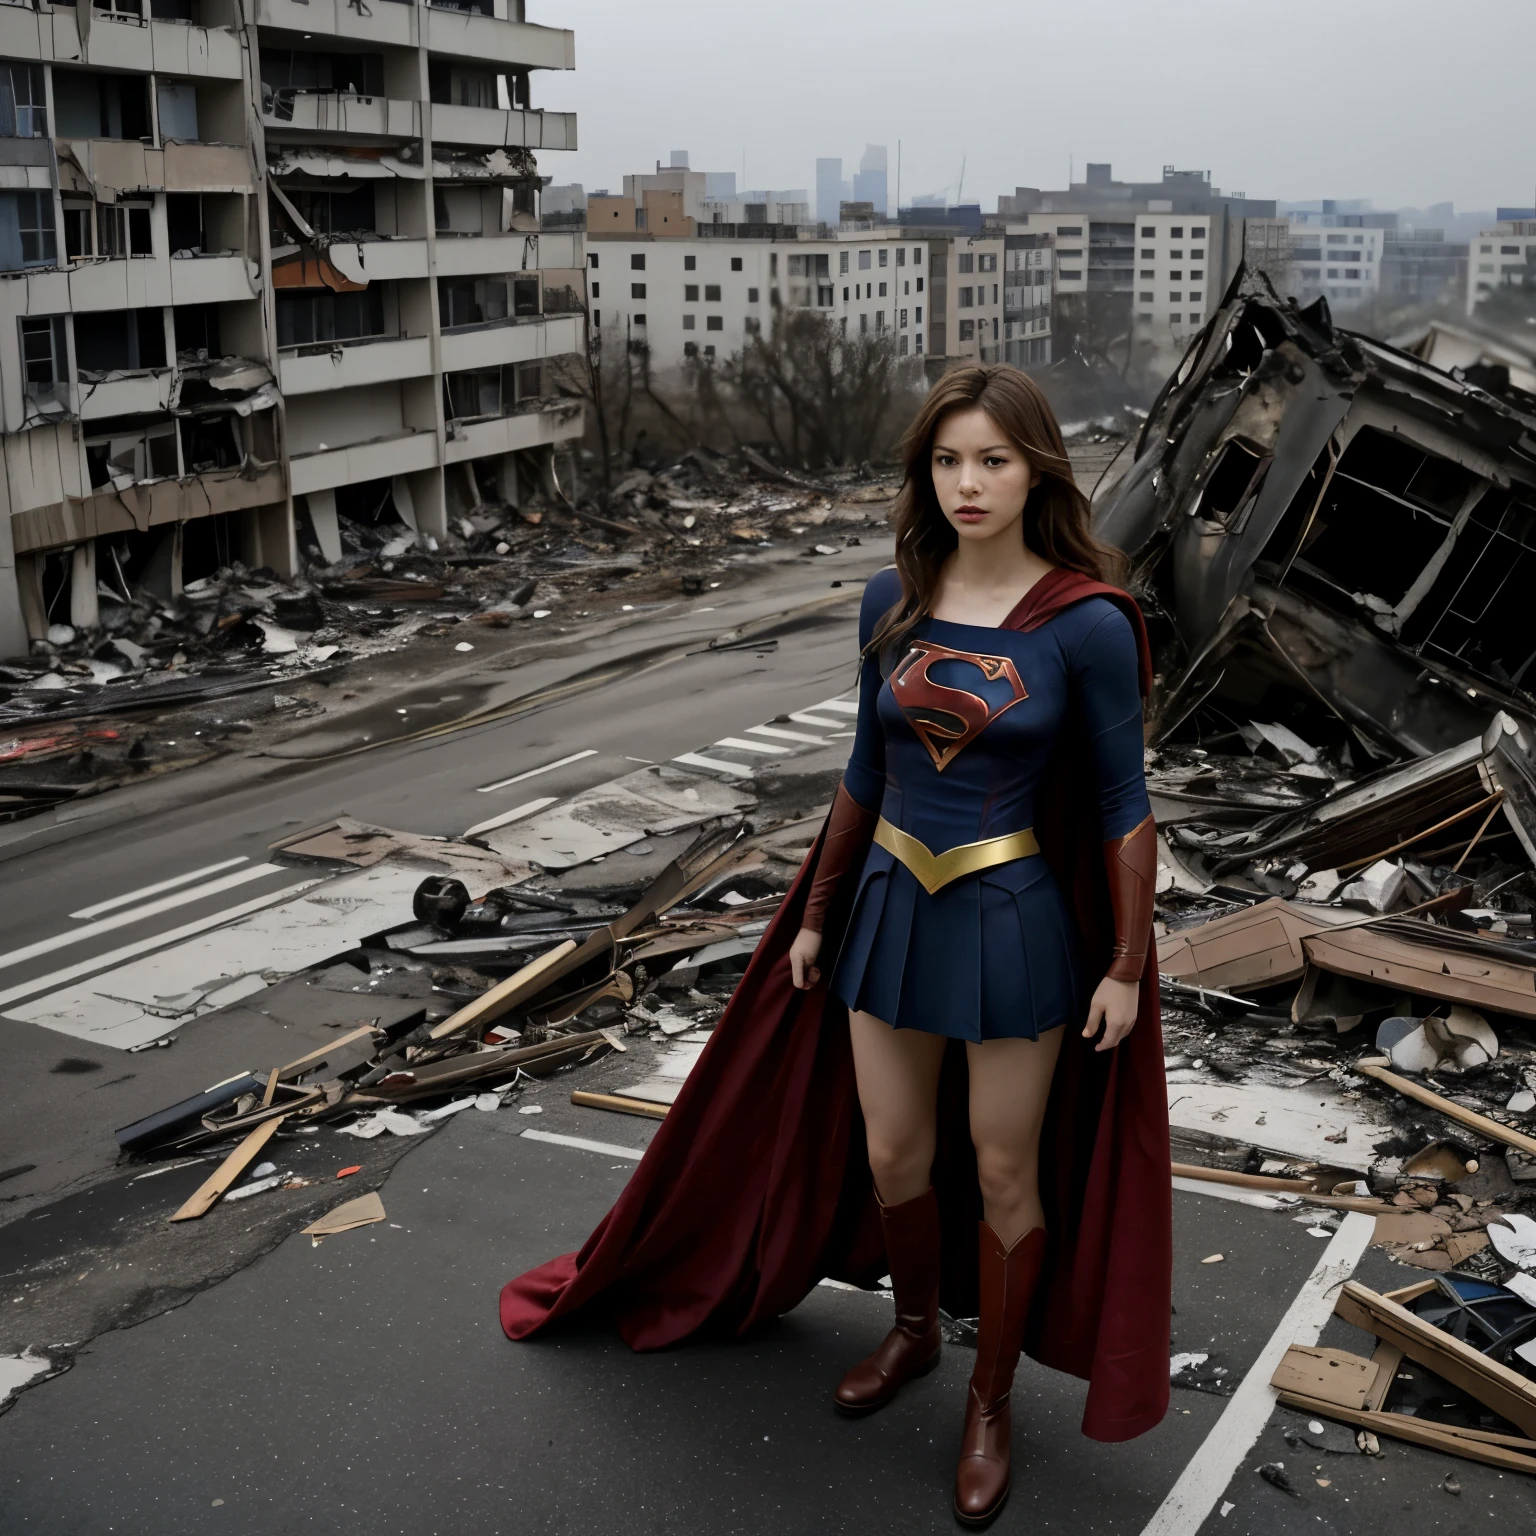 Supergirl blickt auf die Folgen eines Bombenangriffs auf eine Stadt herab、(Fliegendes Supergirl)、Der Morgen bricht an über der Stadt, die zu Asche geworden ist、